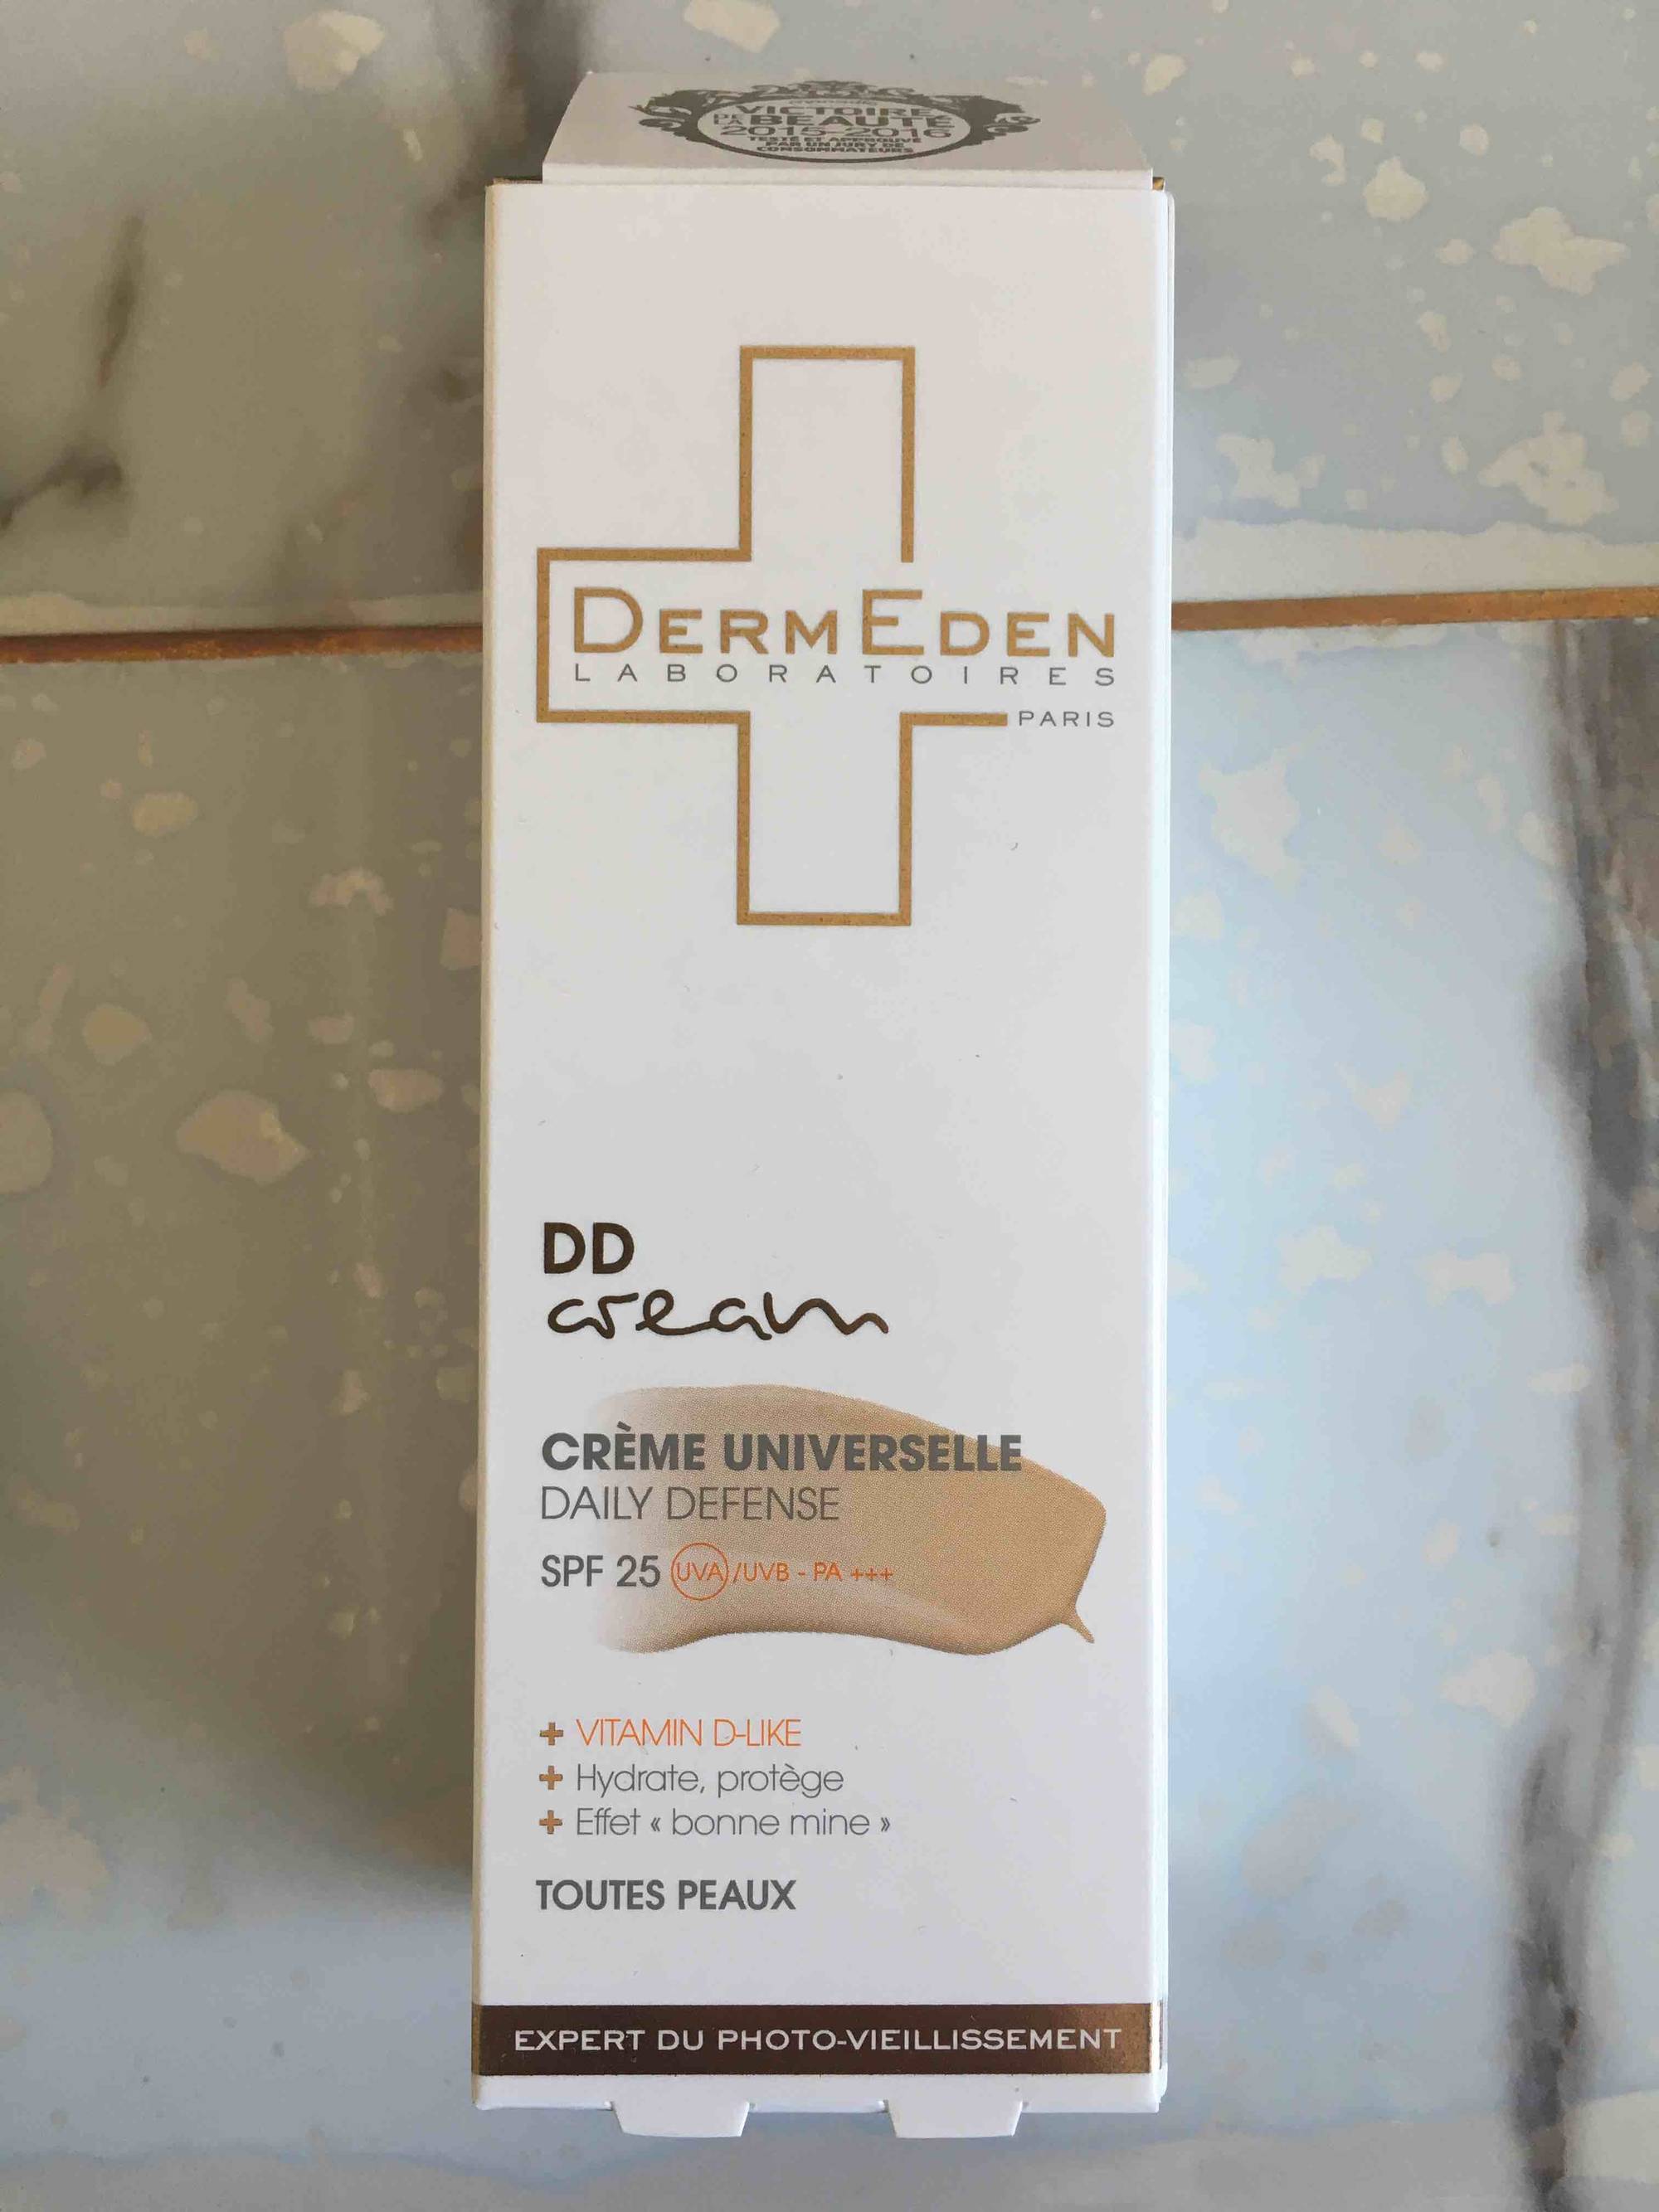 DERMEDEN - DD cream spf 25